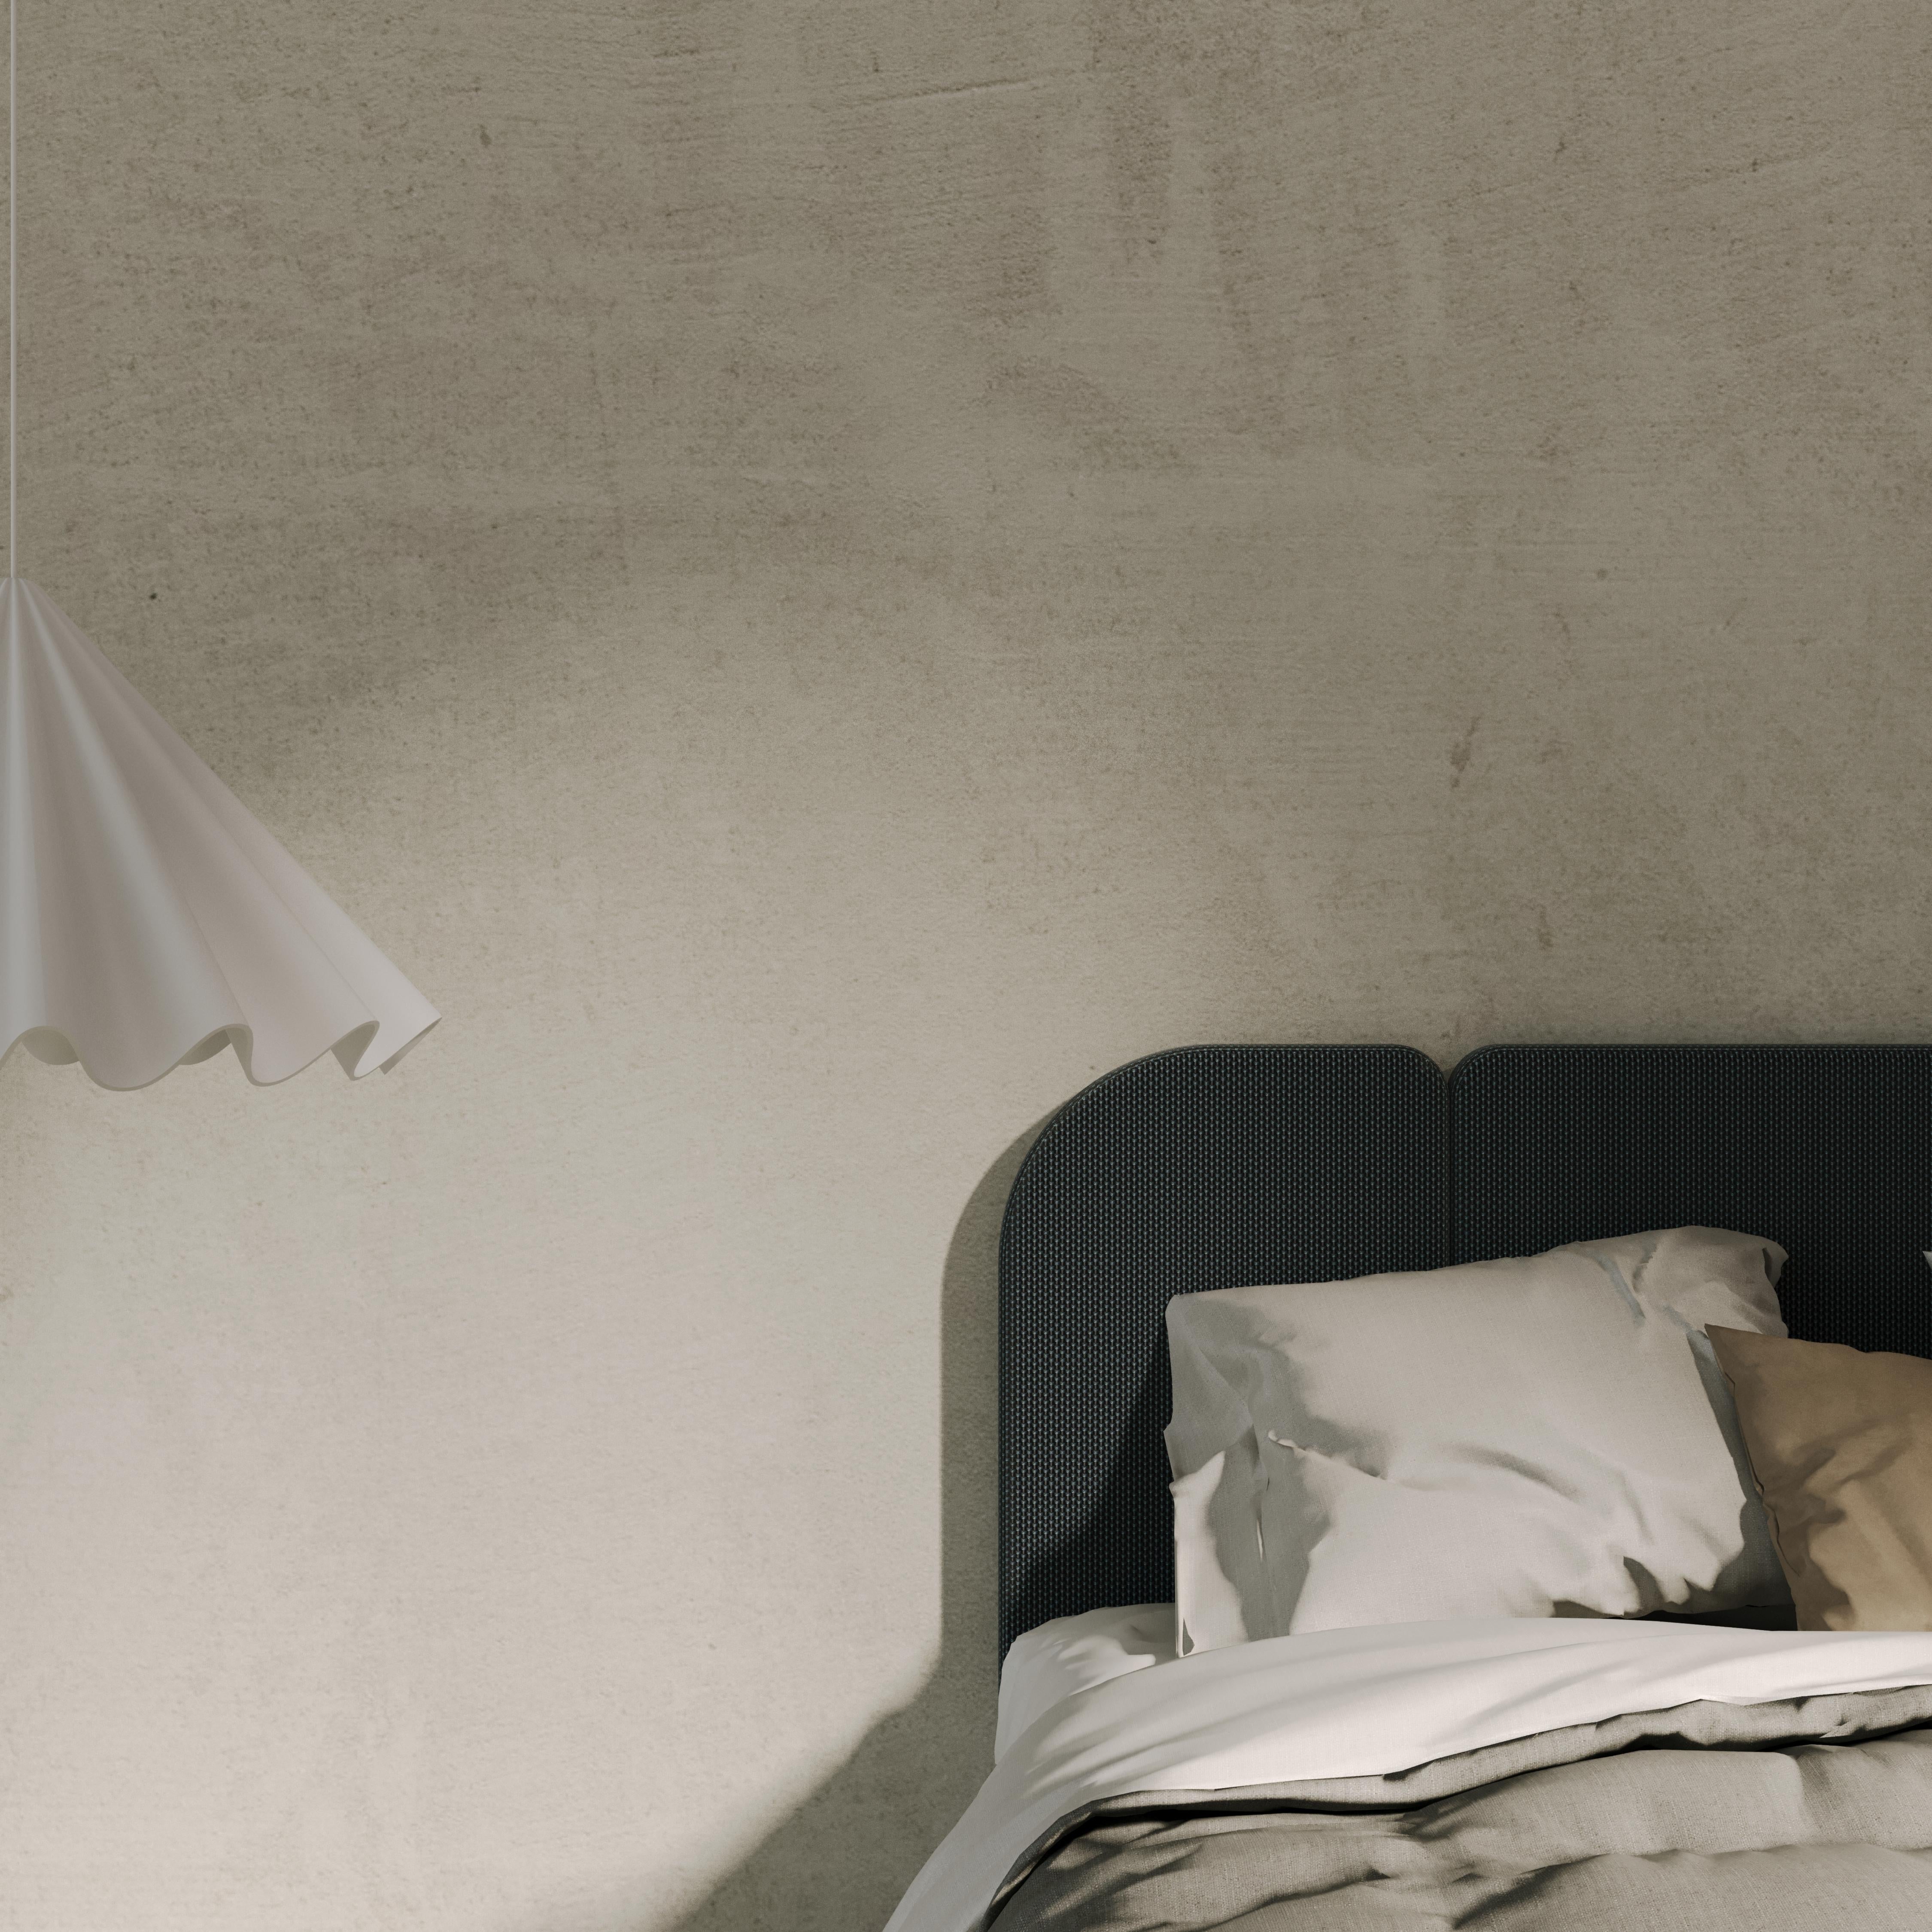 ENYO est une tête de lit en trois modules qui s'adapte à la taille de votre lit. 

Cette version est proposée en Velours Titan, Nobilis autres couleurs sur demande. 

Nos têtes de lit sont fabriquées en France par des tapissiers titrés meilleurs